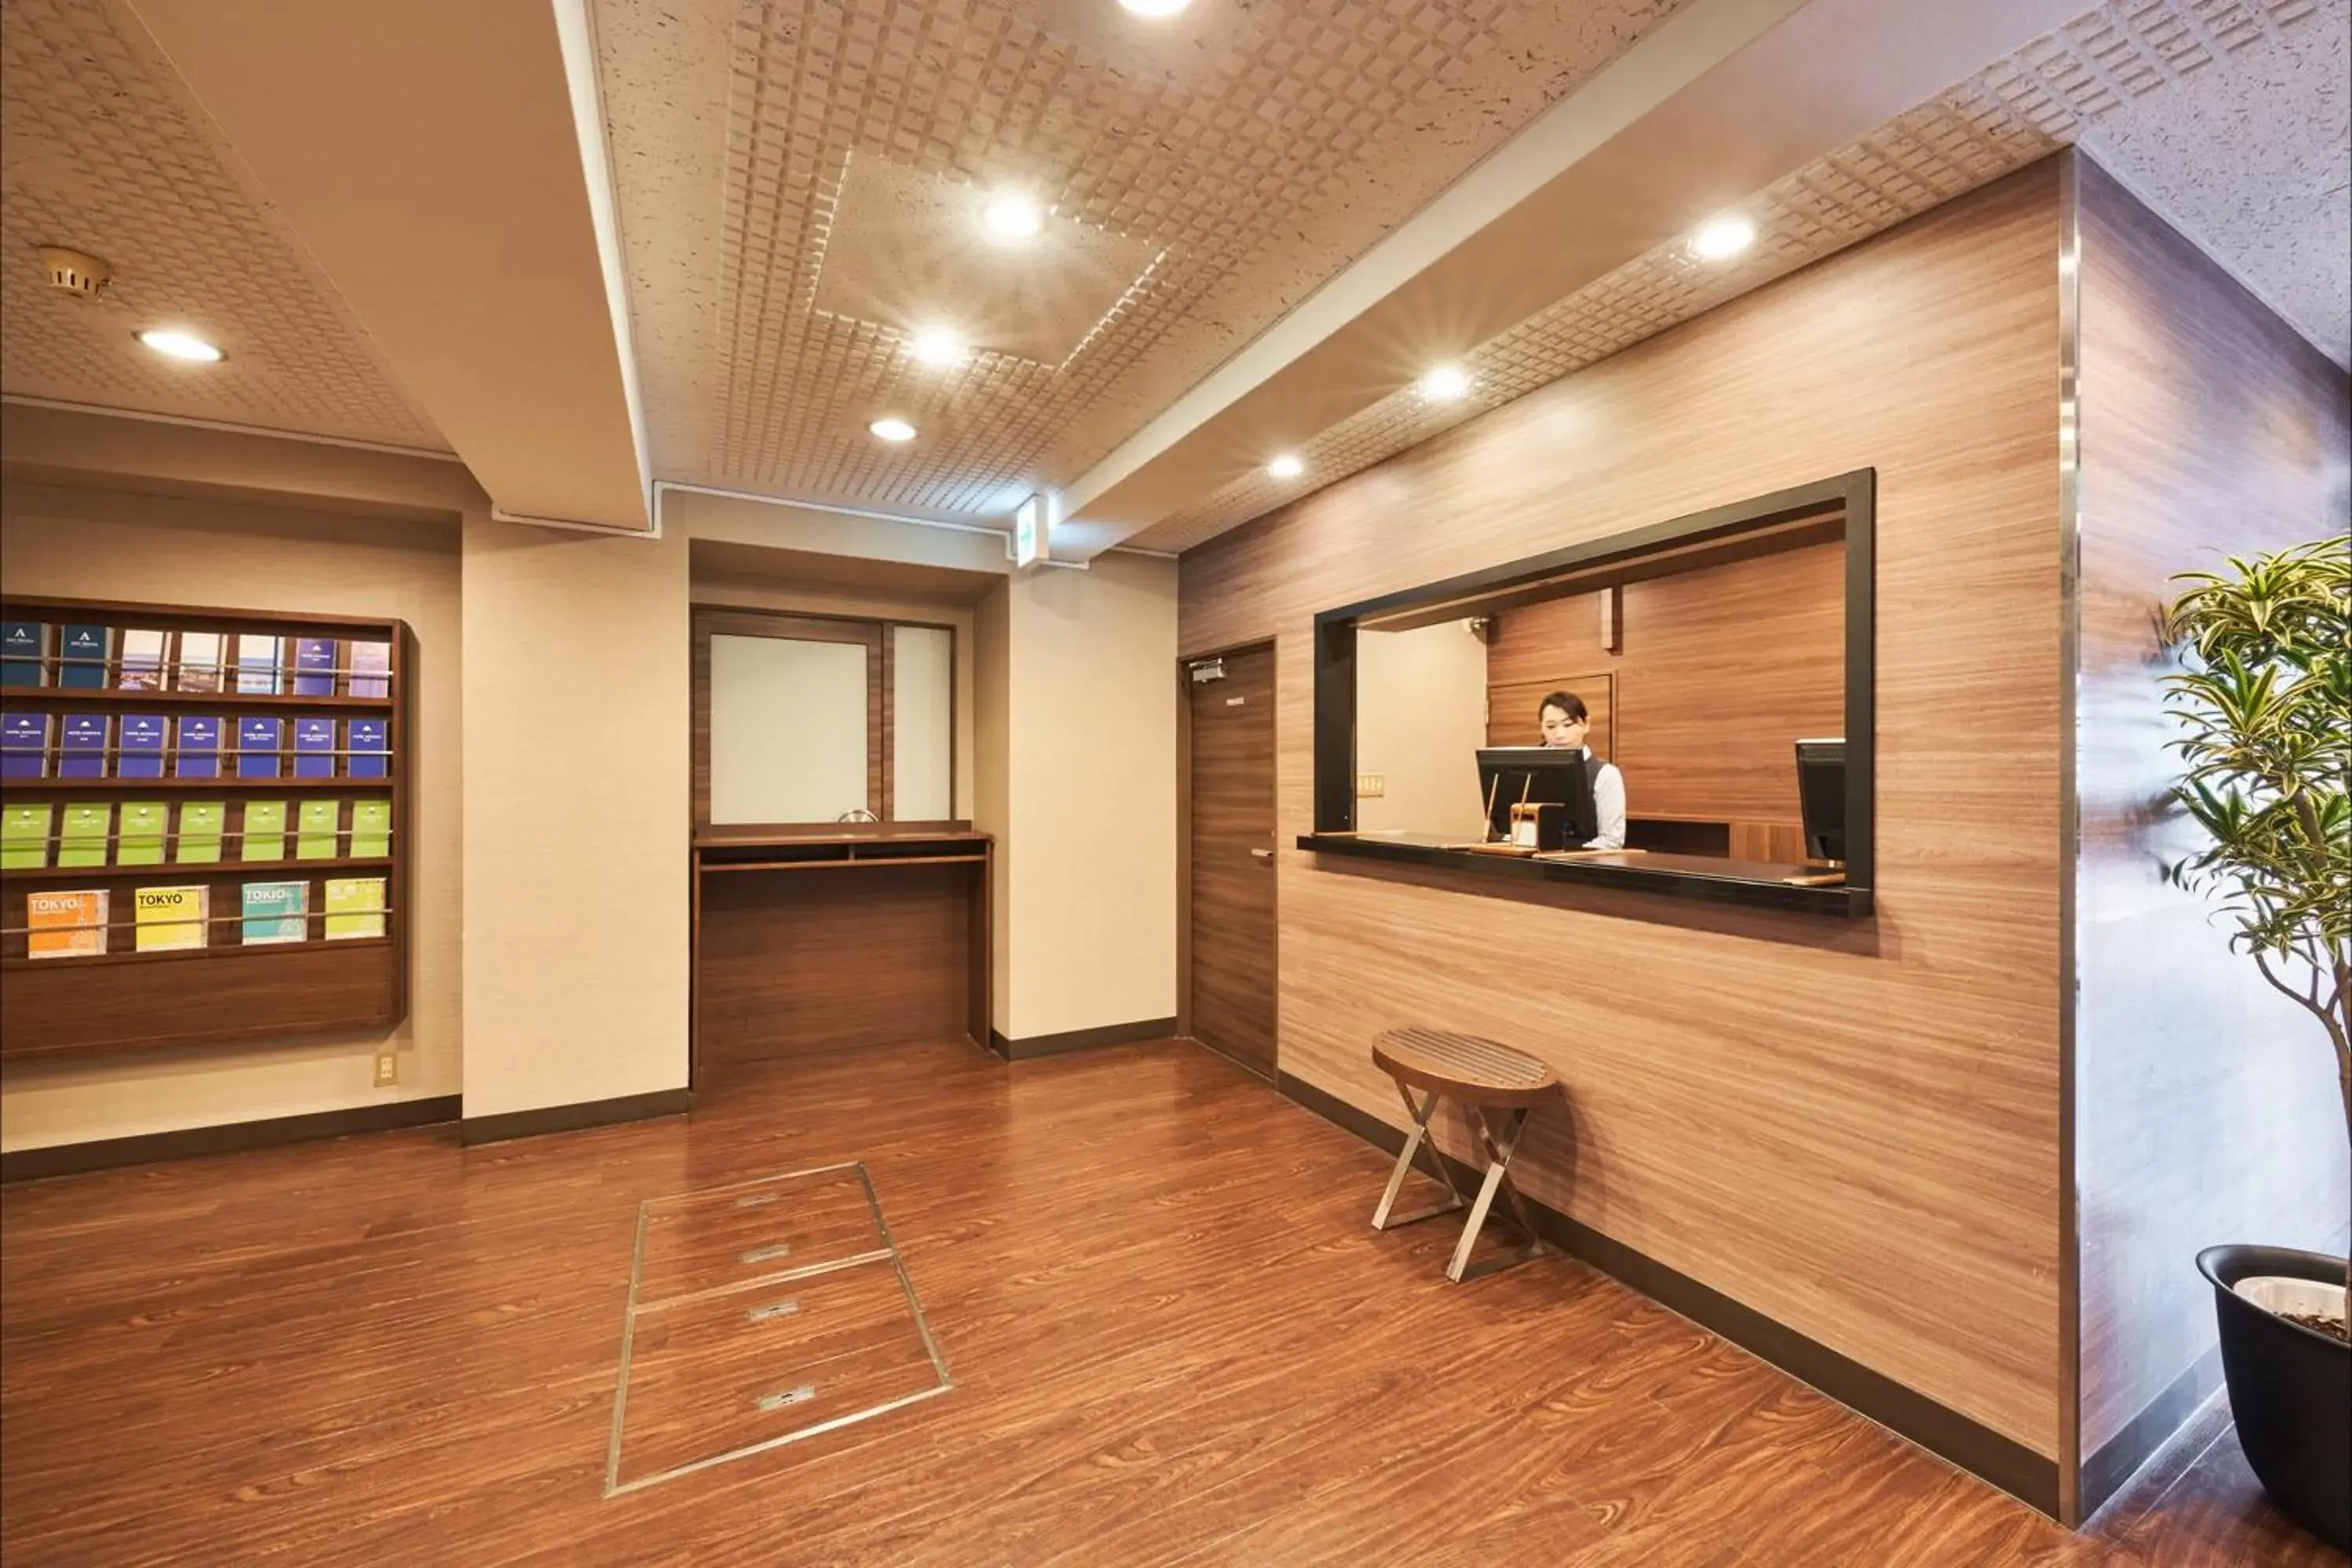 Lobby or reception, Lobby/Reception in Flexstay Inn Higashi-Jujo